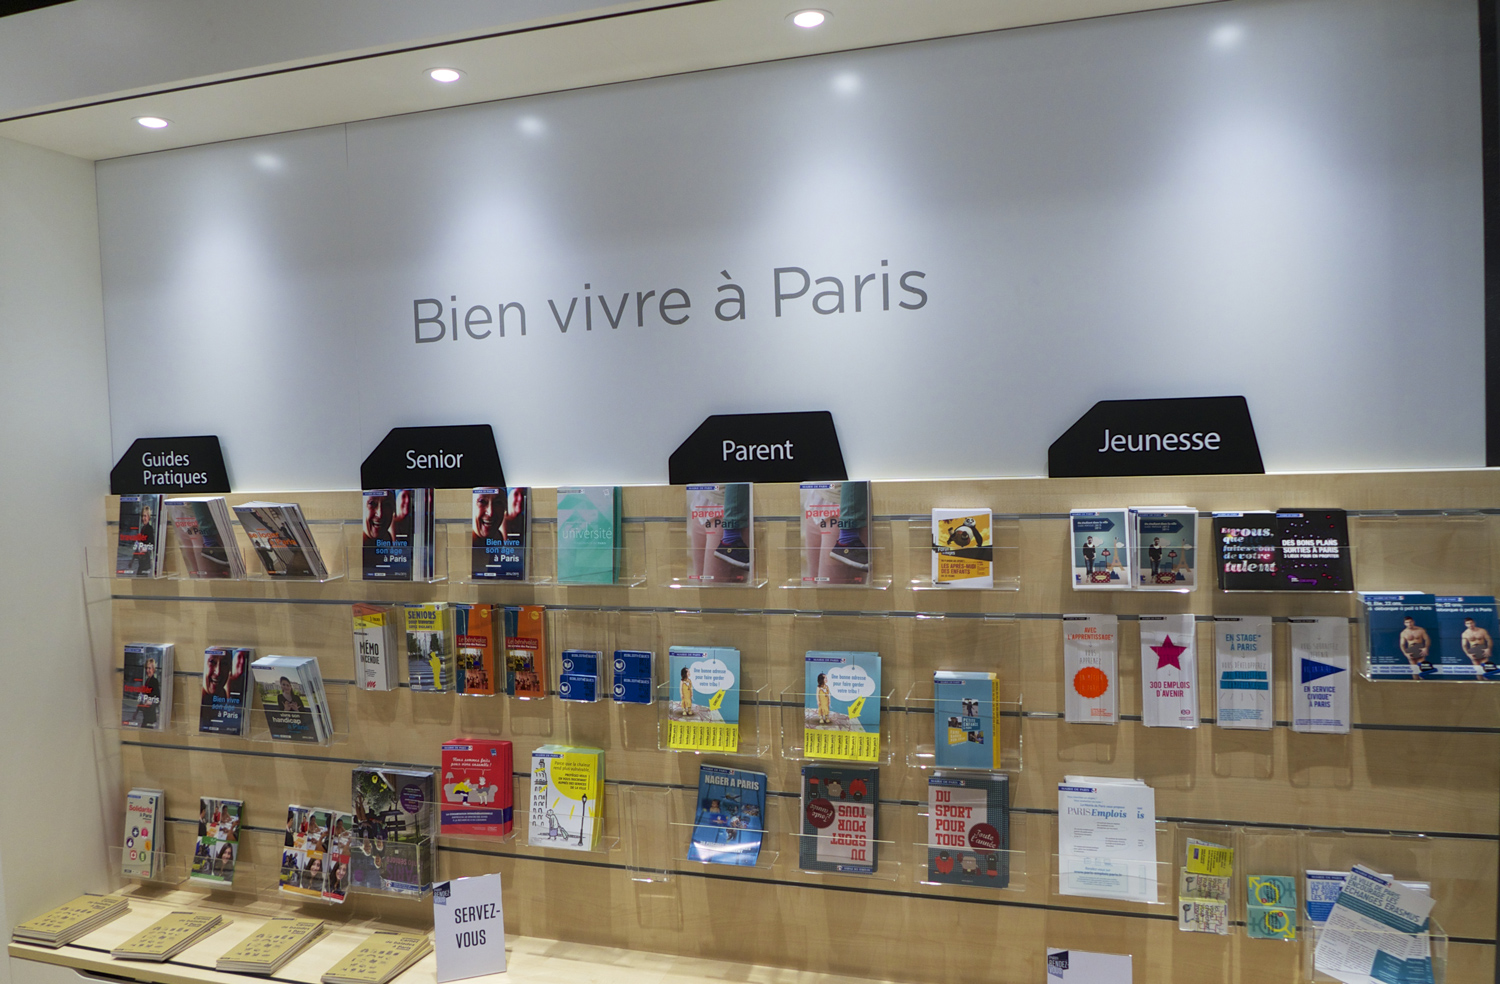 Paris Concept Store information